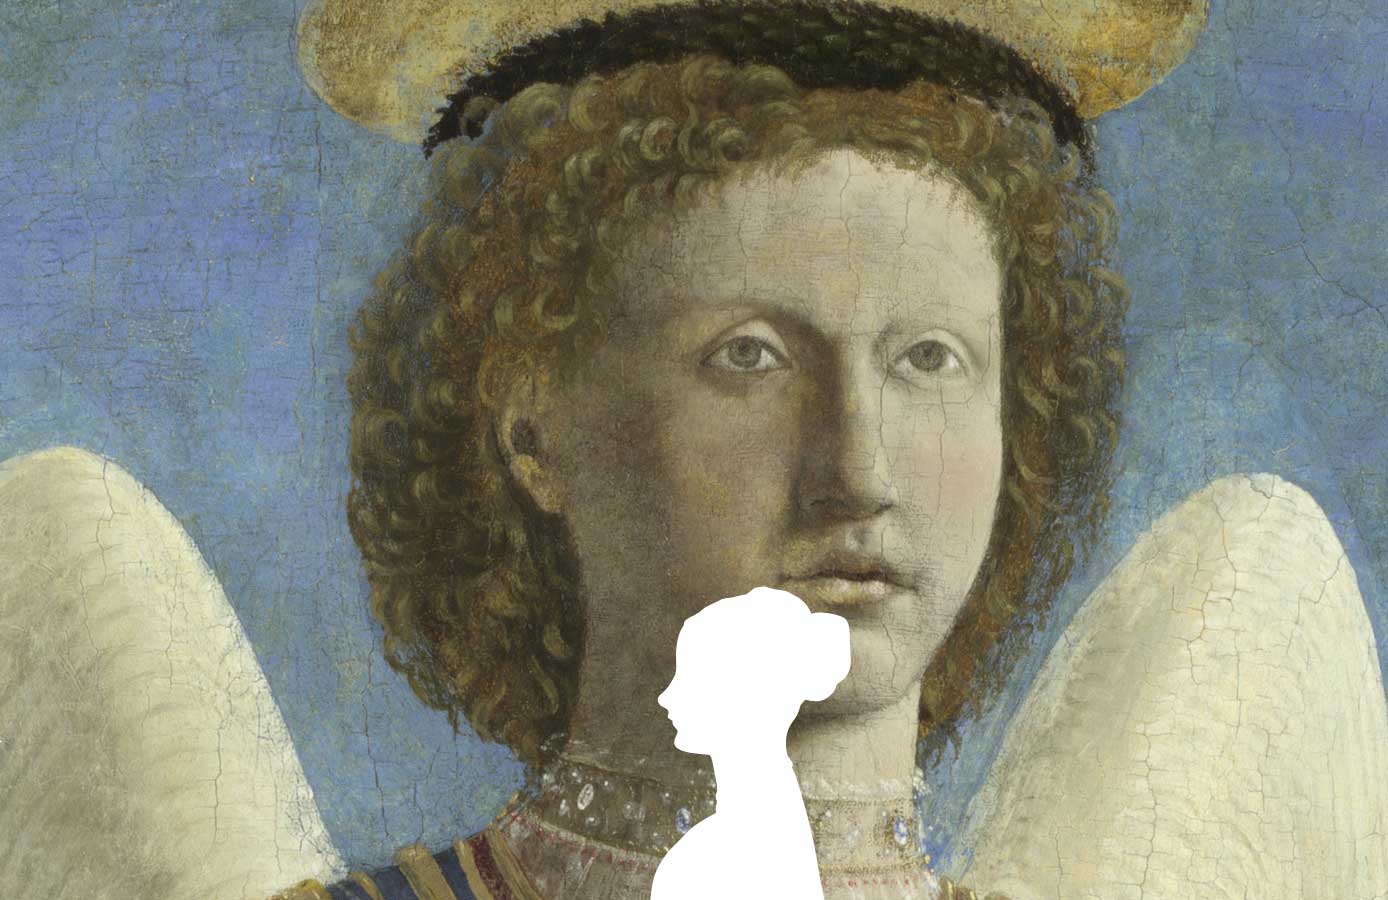 Immagine di un dipinto rinascimentale che ritrae un angelo con riccioli biondi, ali bianche, sfondo blu e berretto marrone.